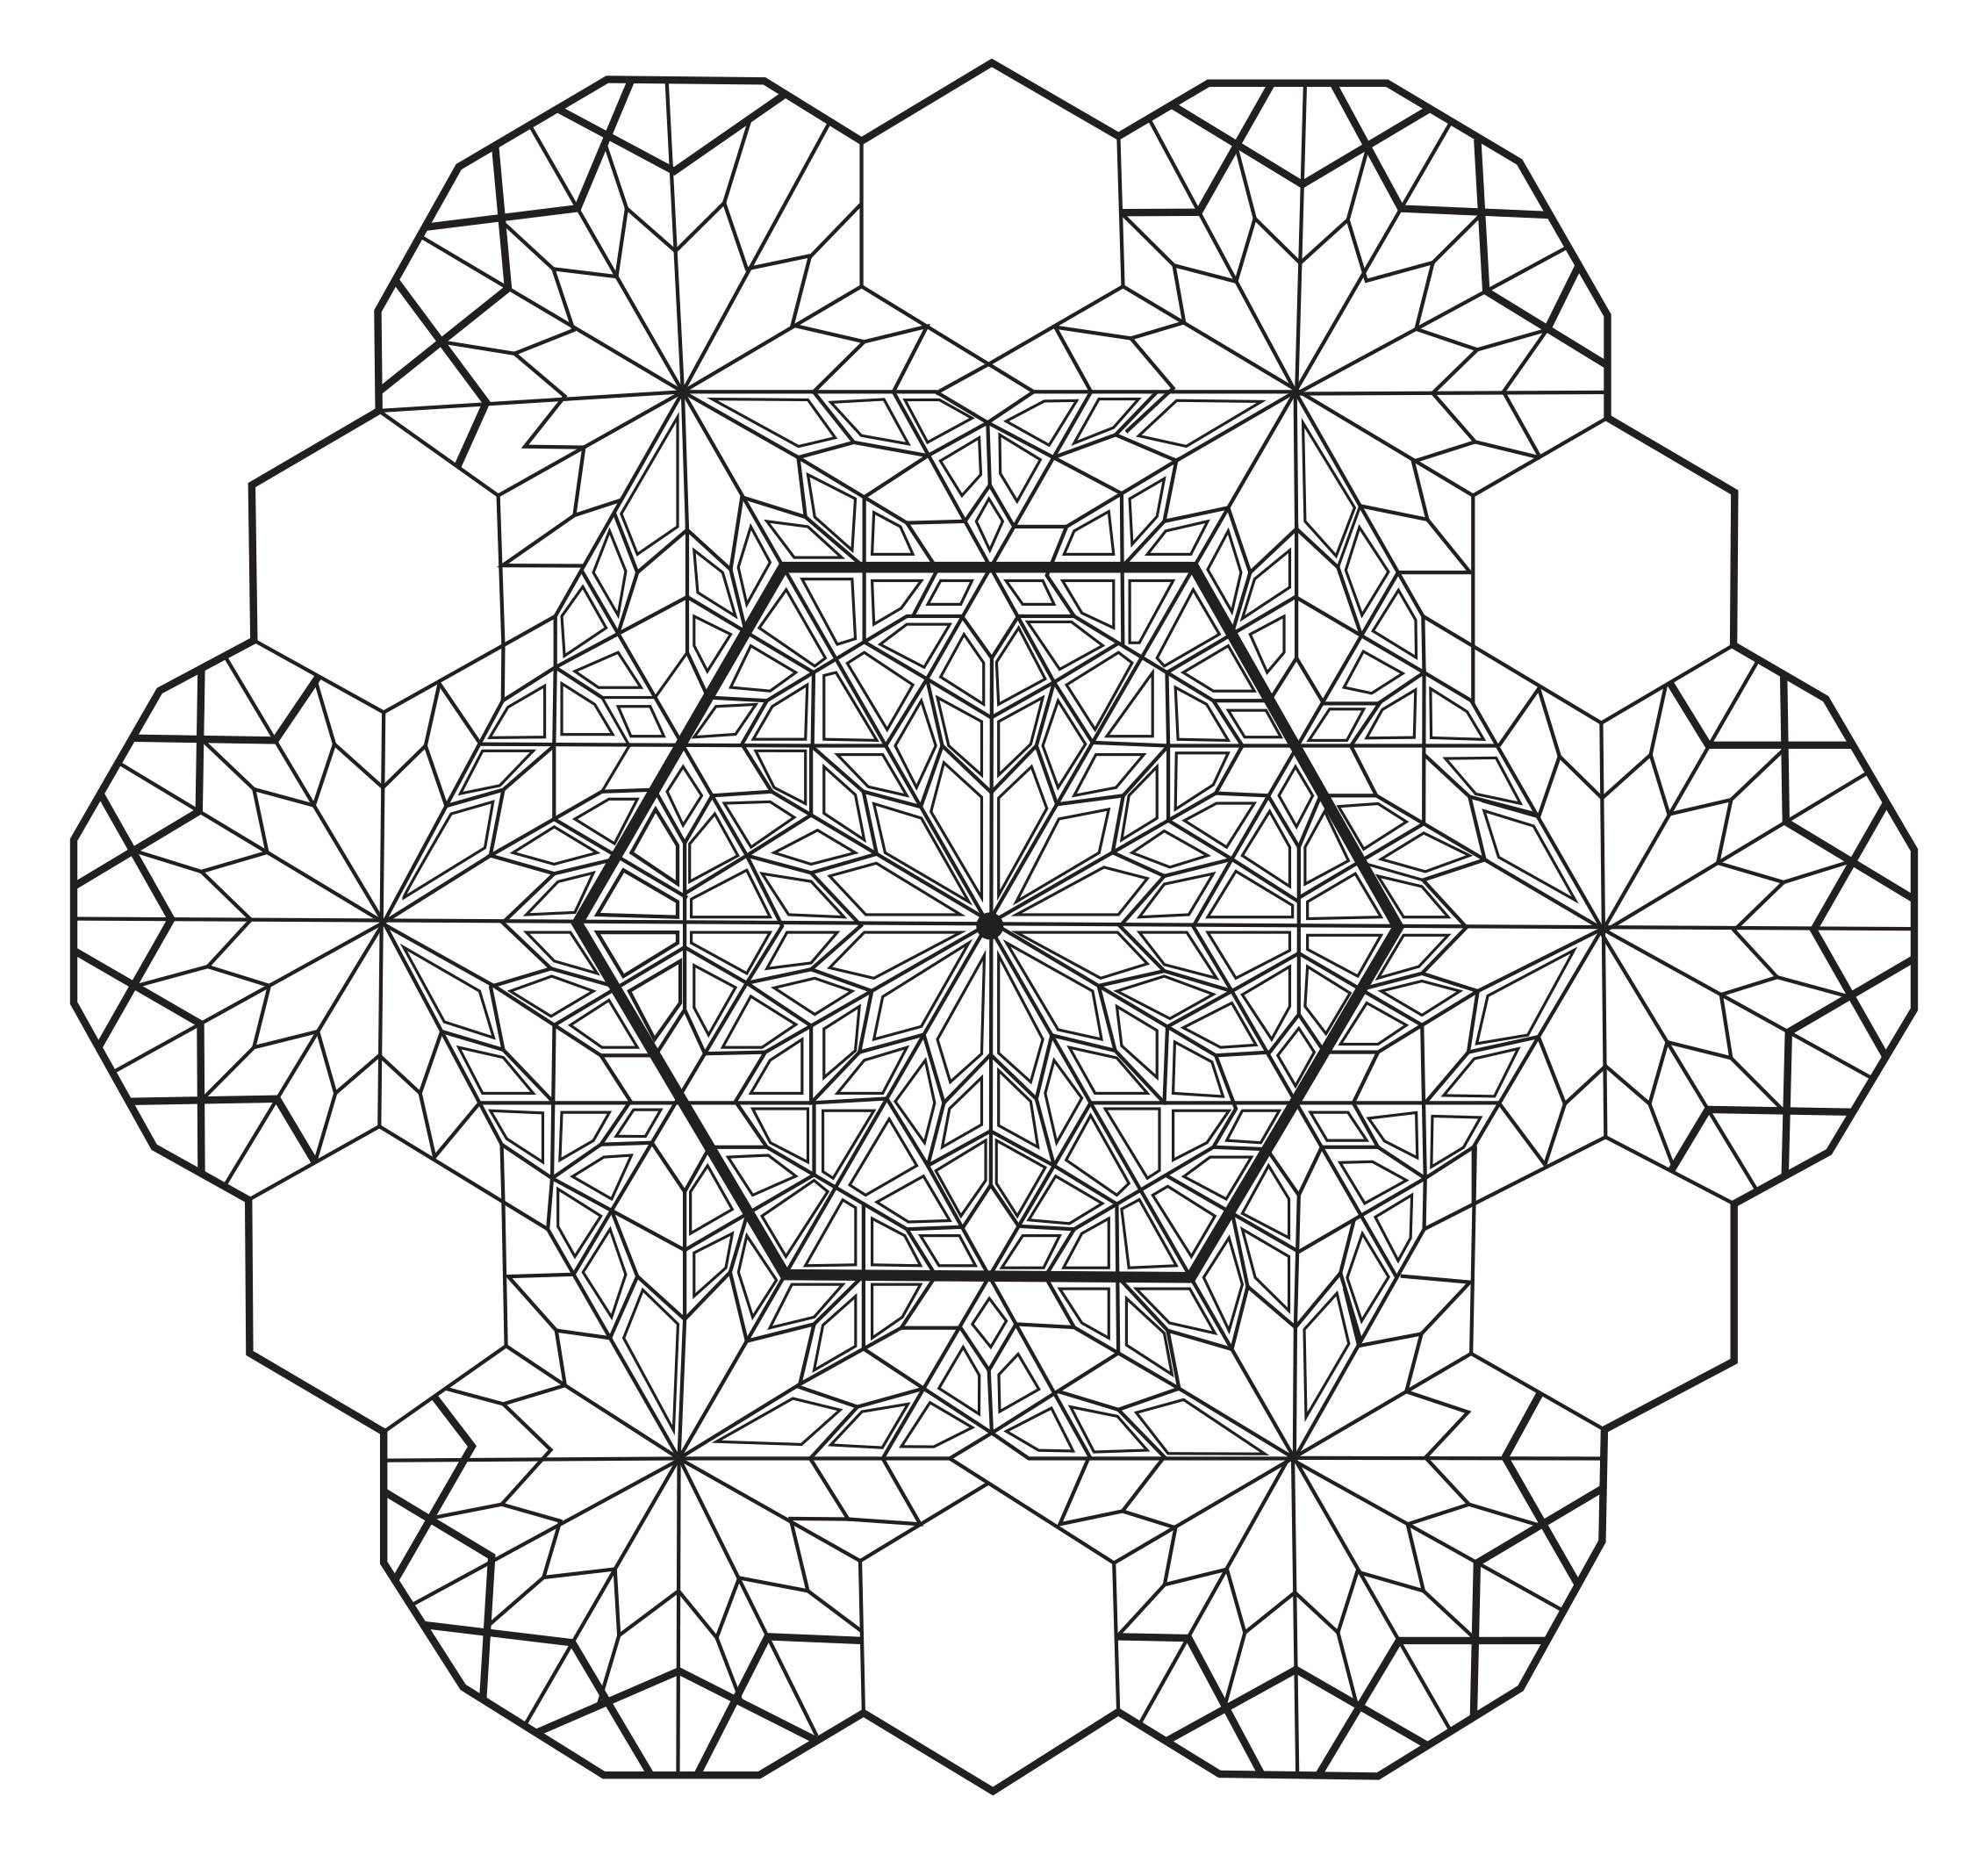 Ein 'sechseckiges' Mandala, das recht schwierig zu kolorieren ist. Es ist perfekt, wenn Sie gerne kleine Bereiche farbig gestalten und verschiedene Details mögen.